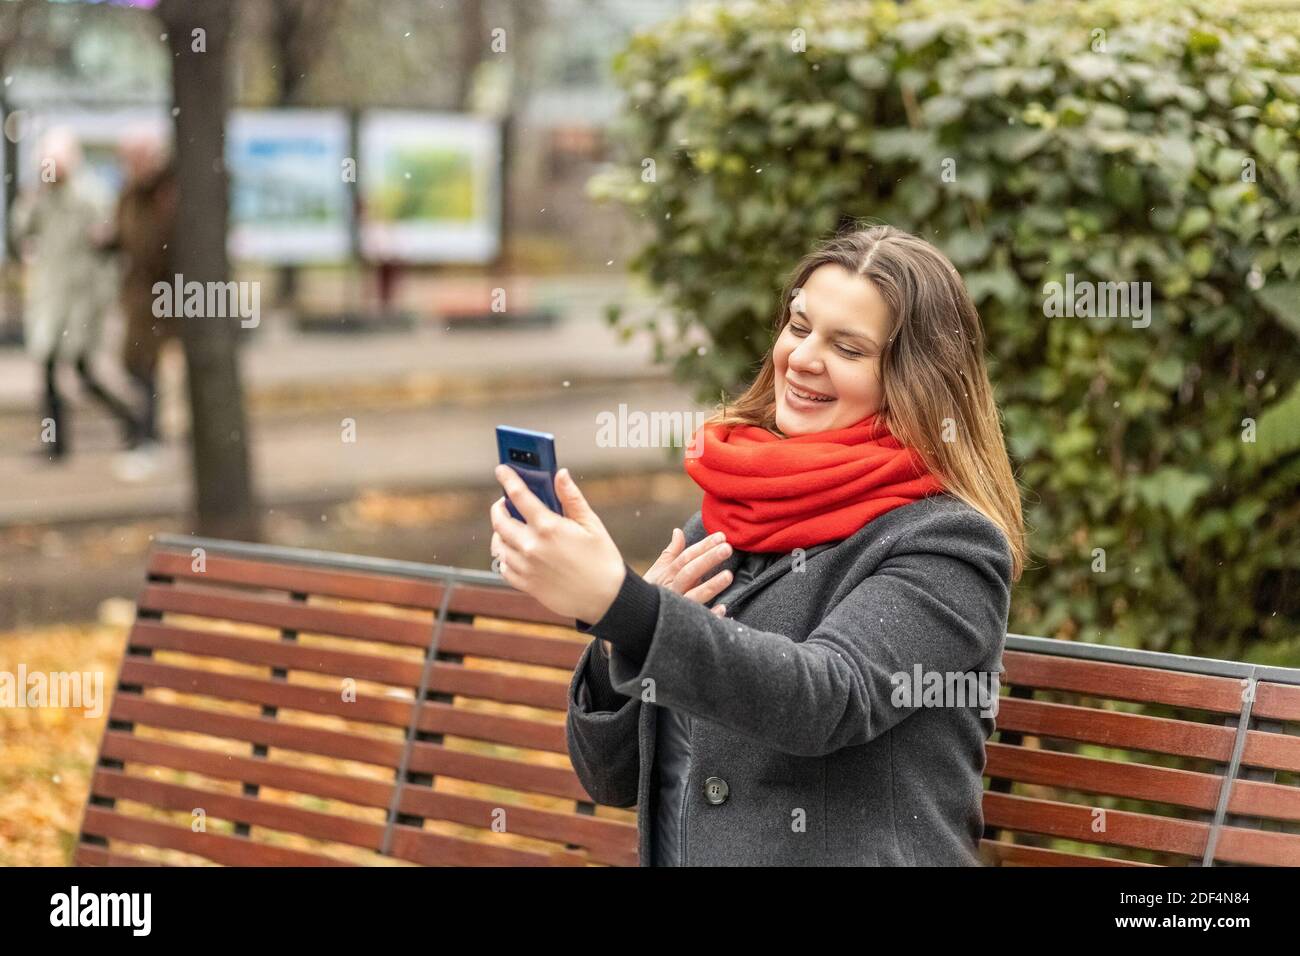 Junge lächelnde Frau Videochat mit dem Smartphone auf einer Parkbank sitzend. Videoanruf an ein Mobiltelefon. Das Mädchen spricht. Video-Chat in sozialen Netzwerken Stockfoto